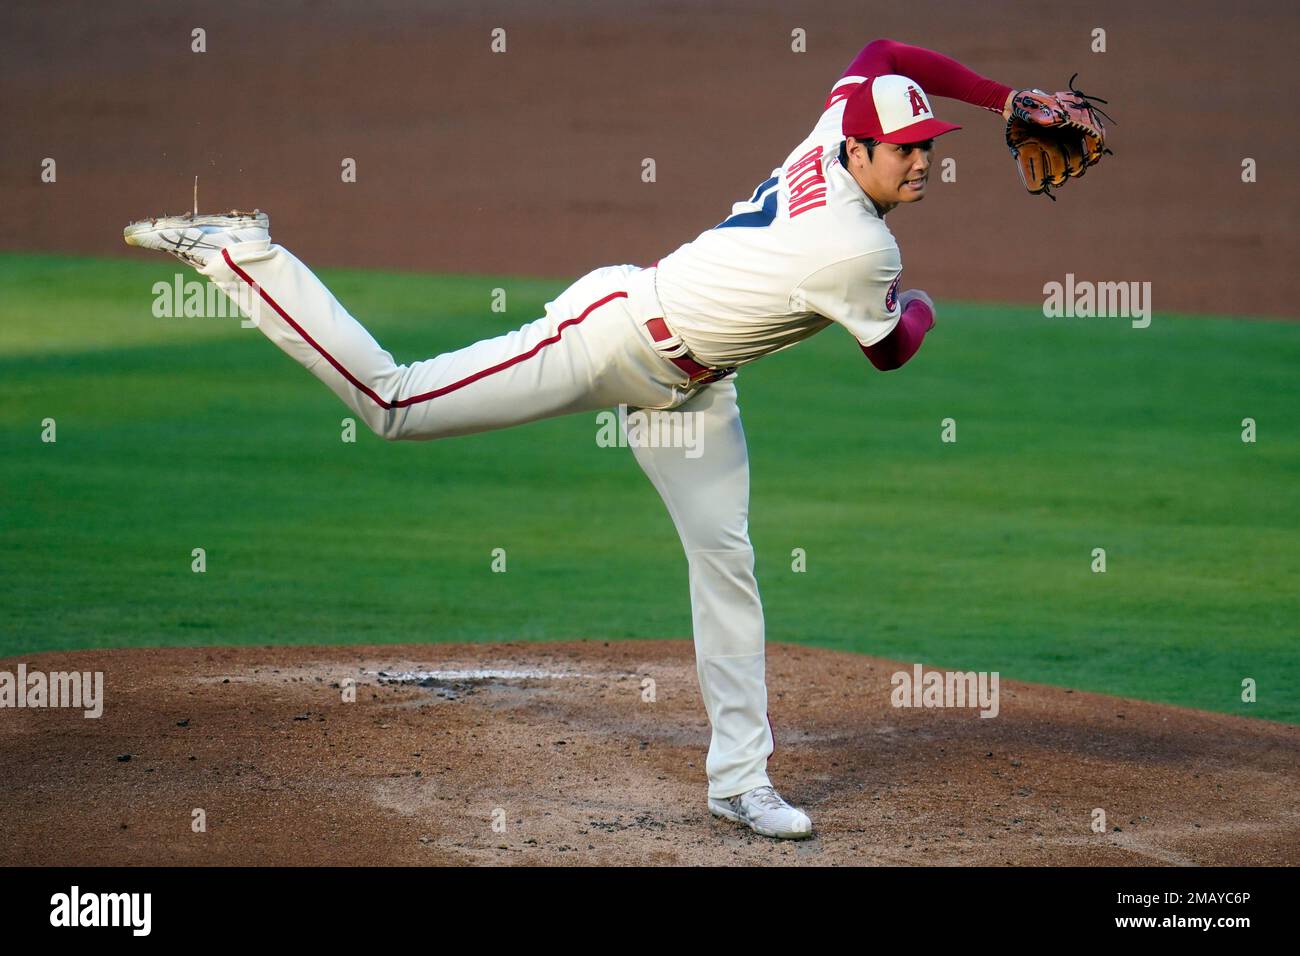 鬼 Samurai Baseball batter inspired by Los Angeles Angels player Shohei  Ohtani